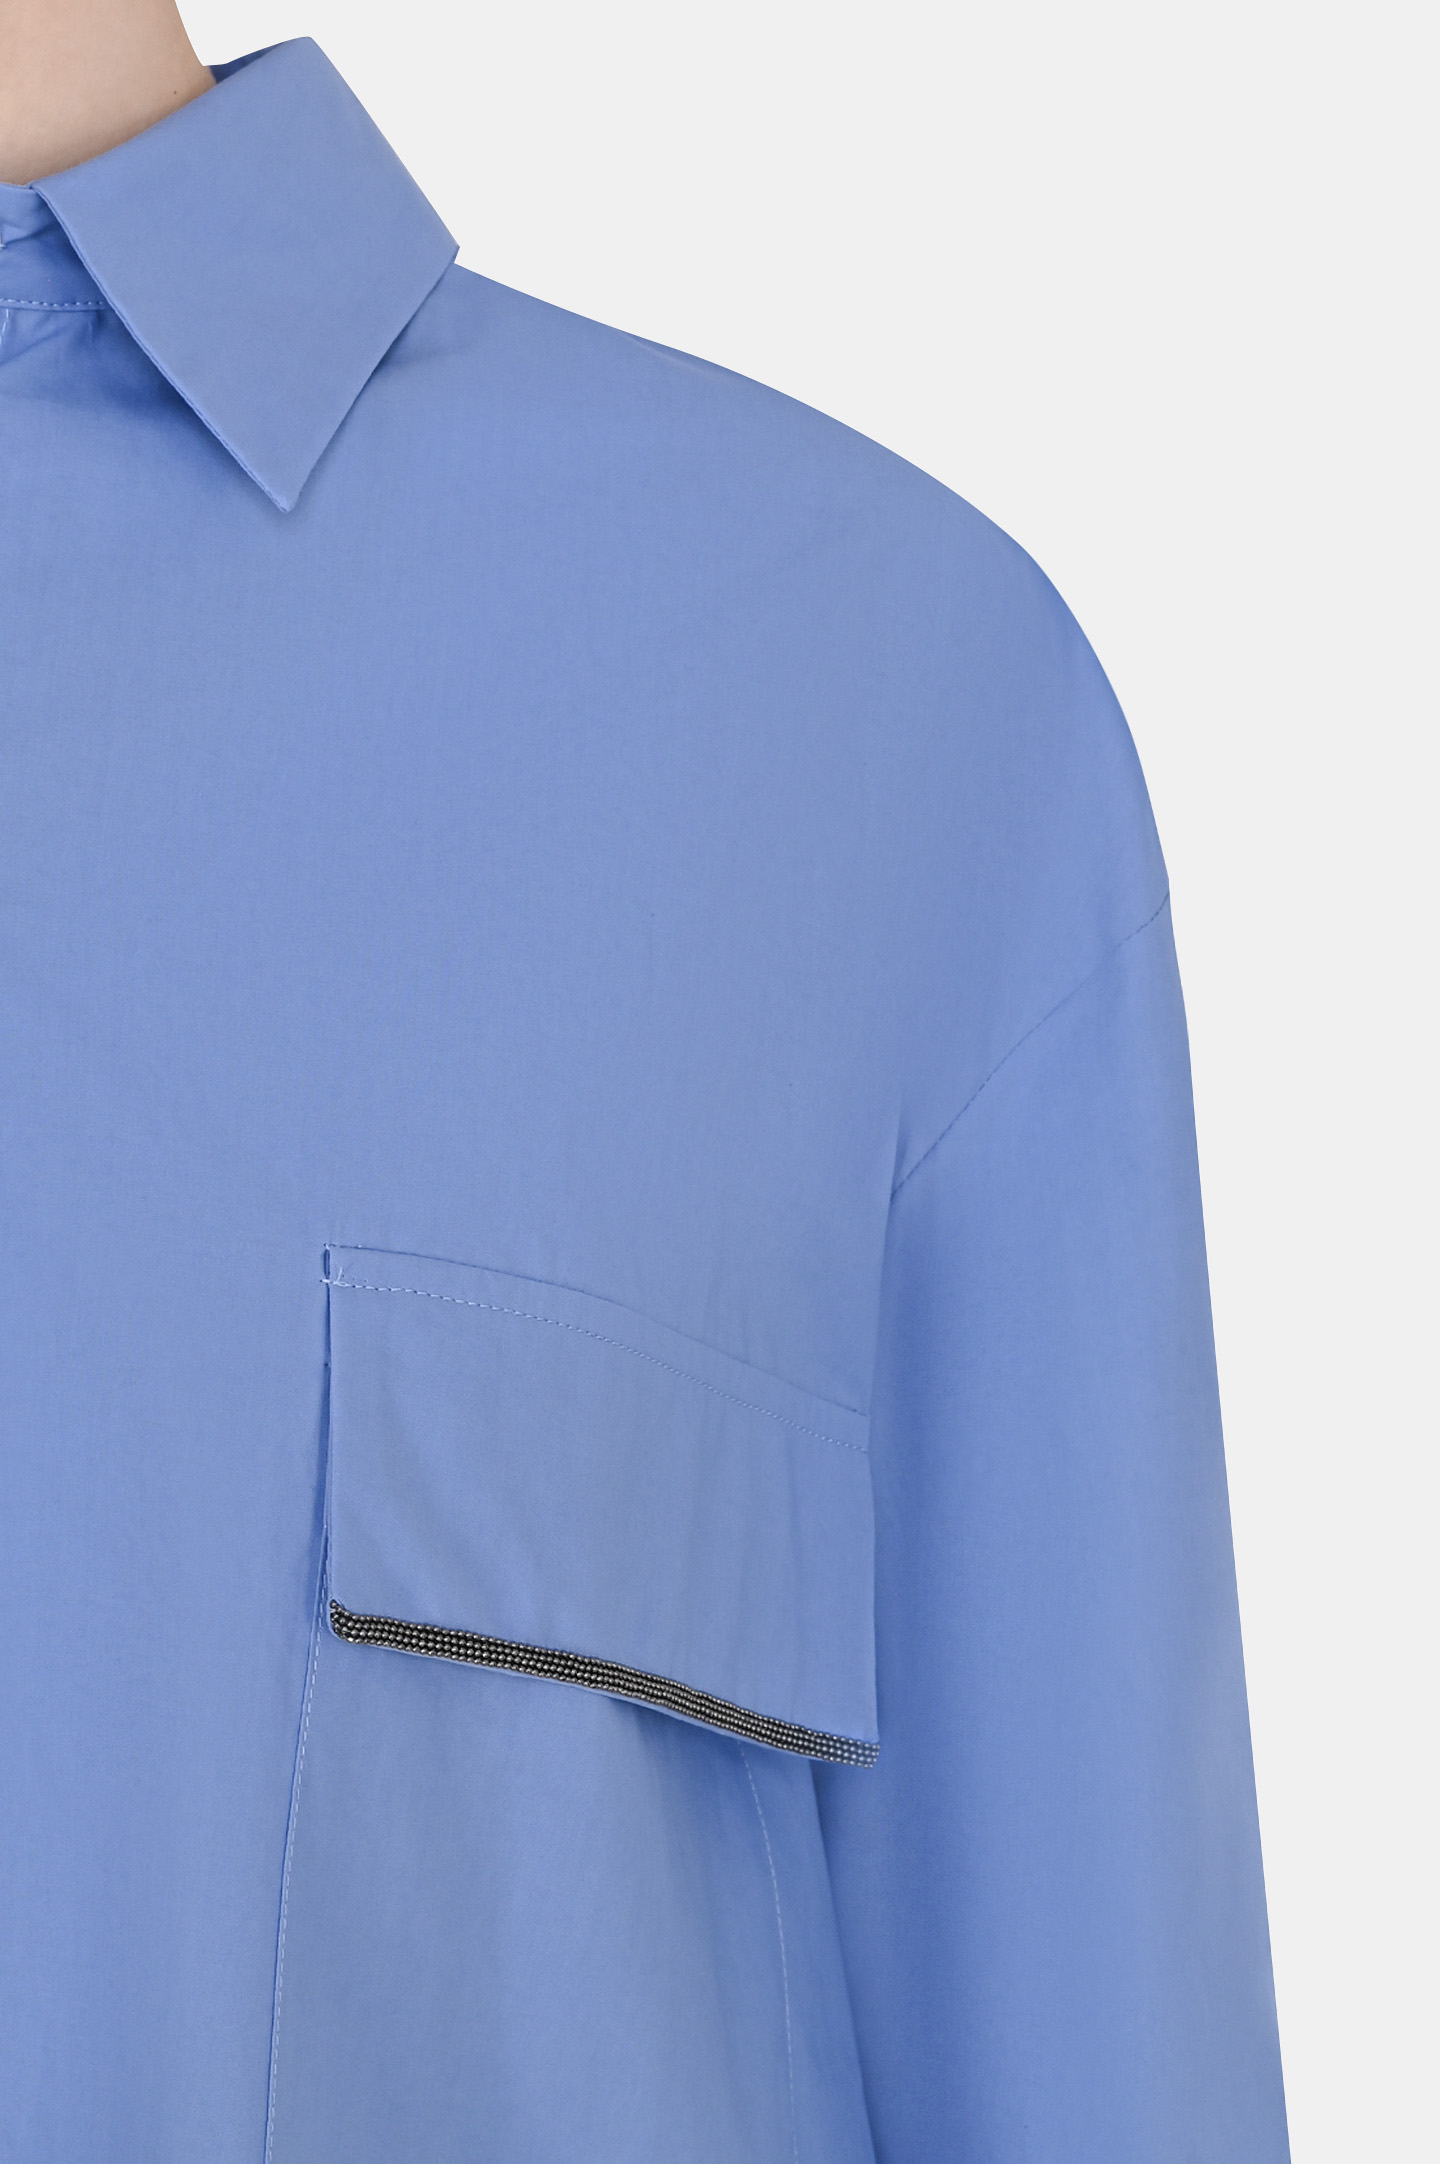 Рубашка FABIANA FILIPPI CAD273W359D252, цвет: Голубой, Женский